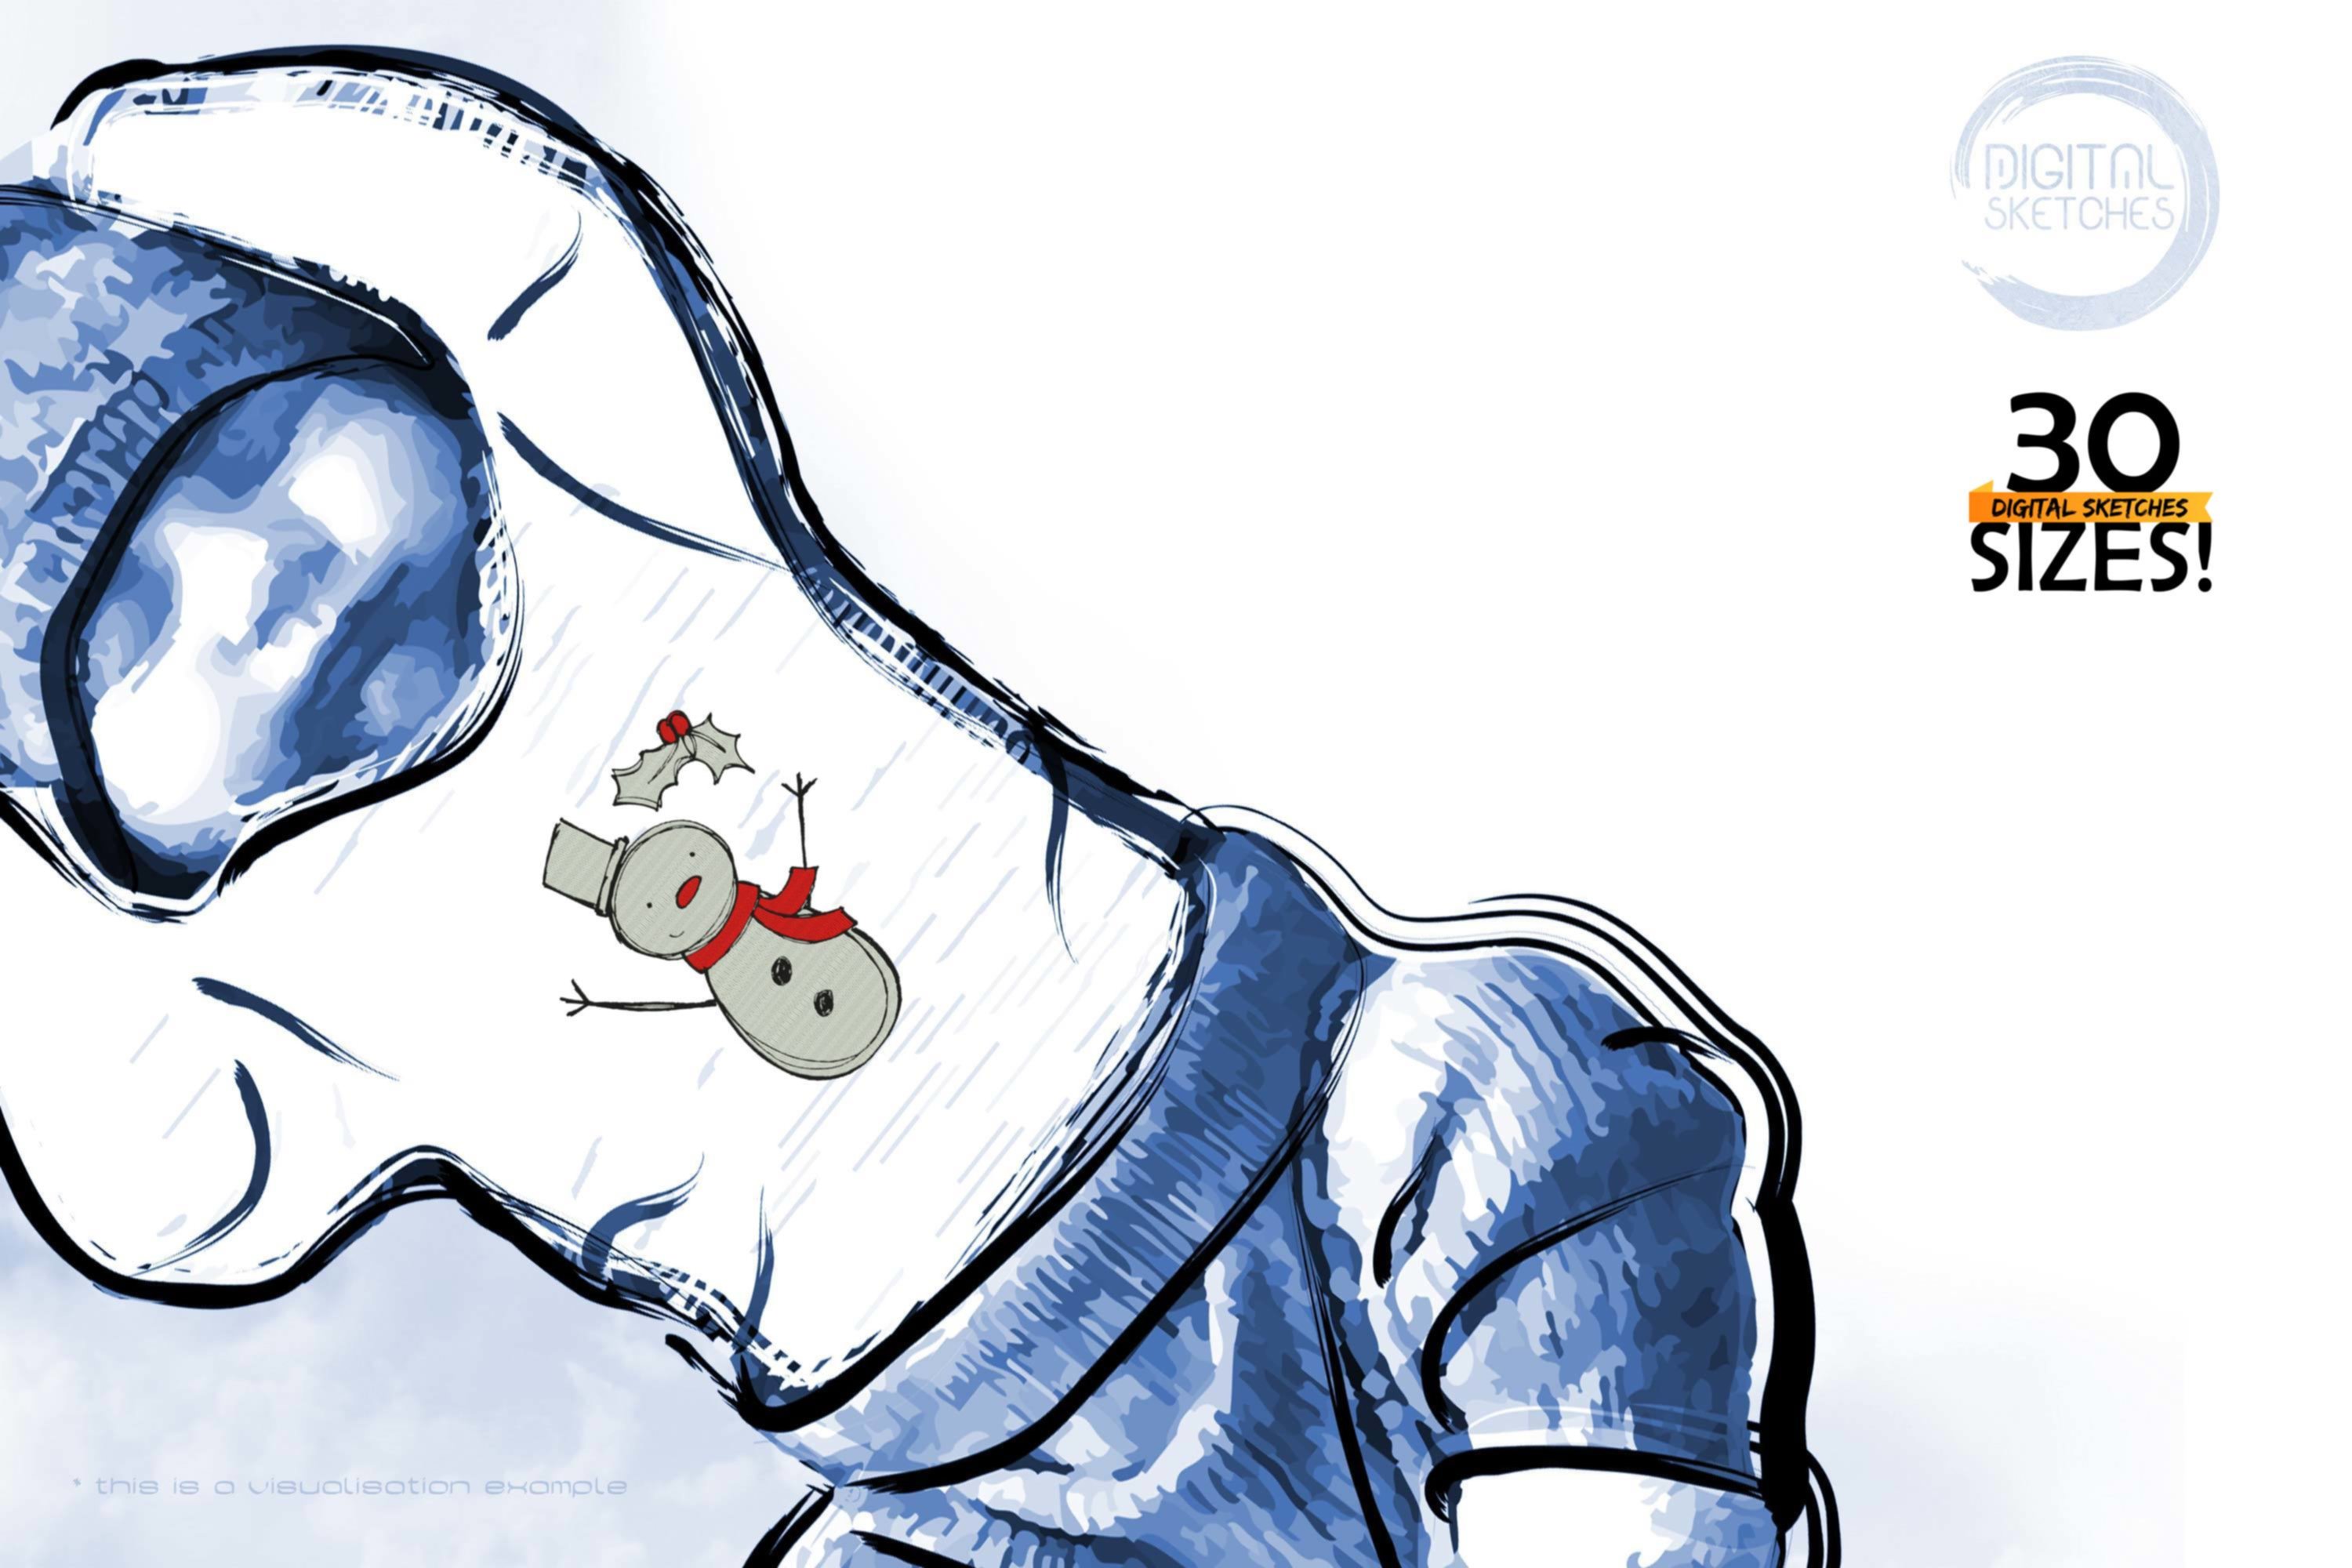 Snowman Hand-Drawn